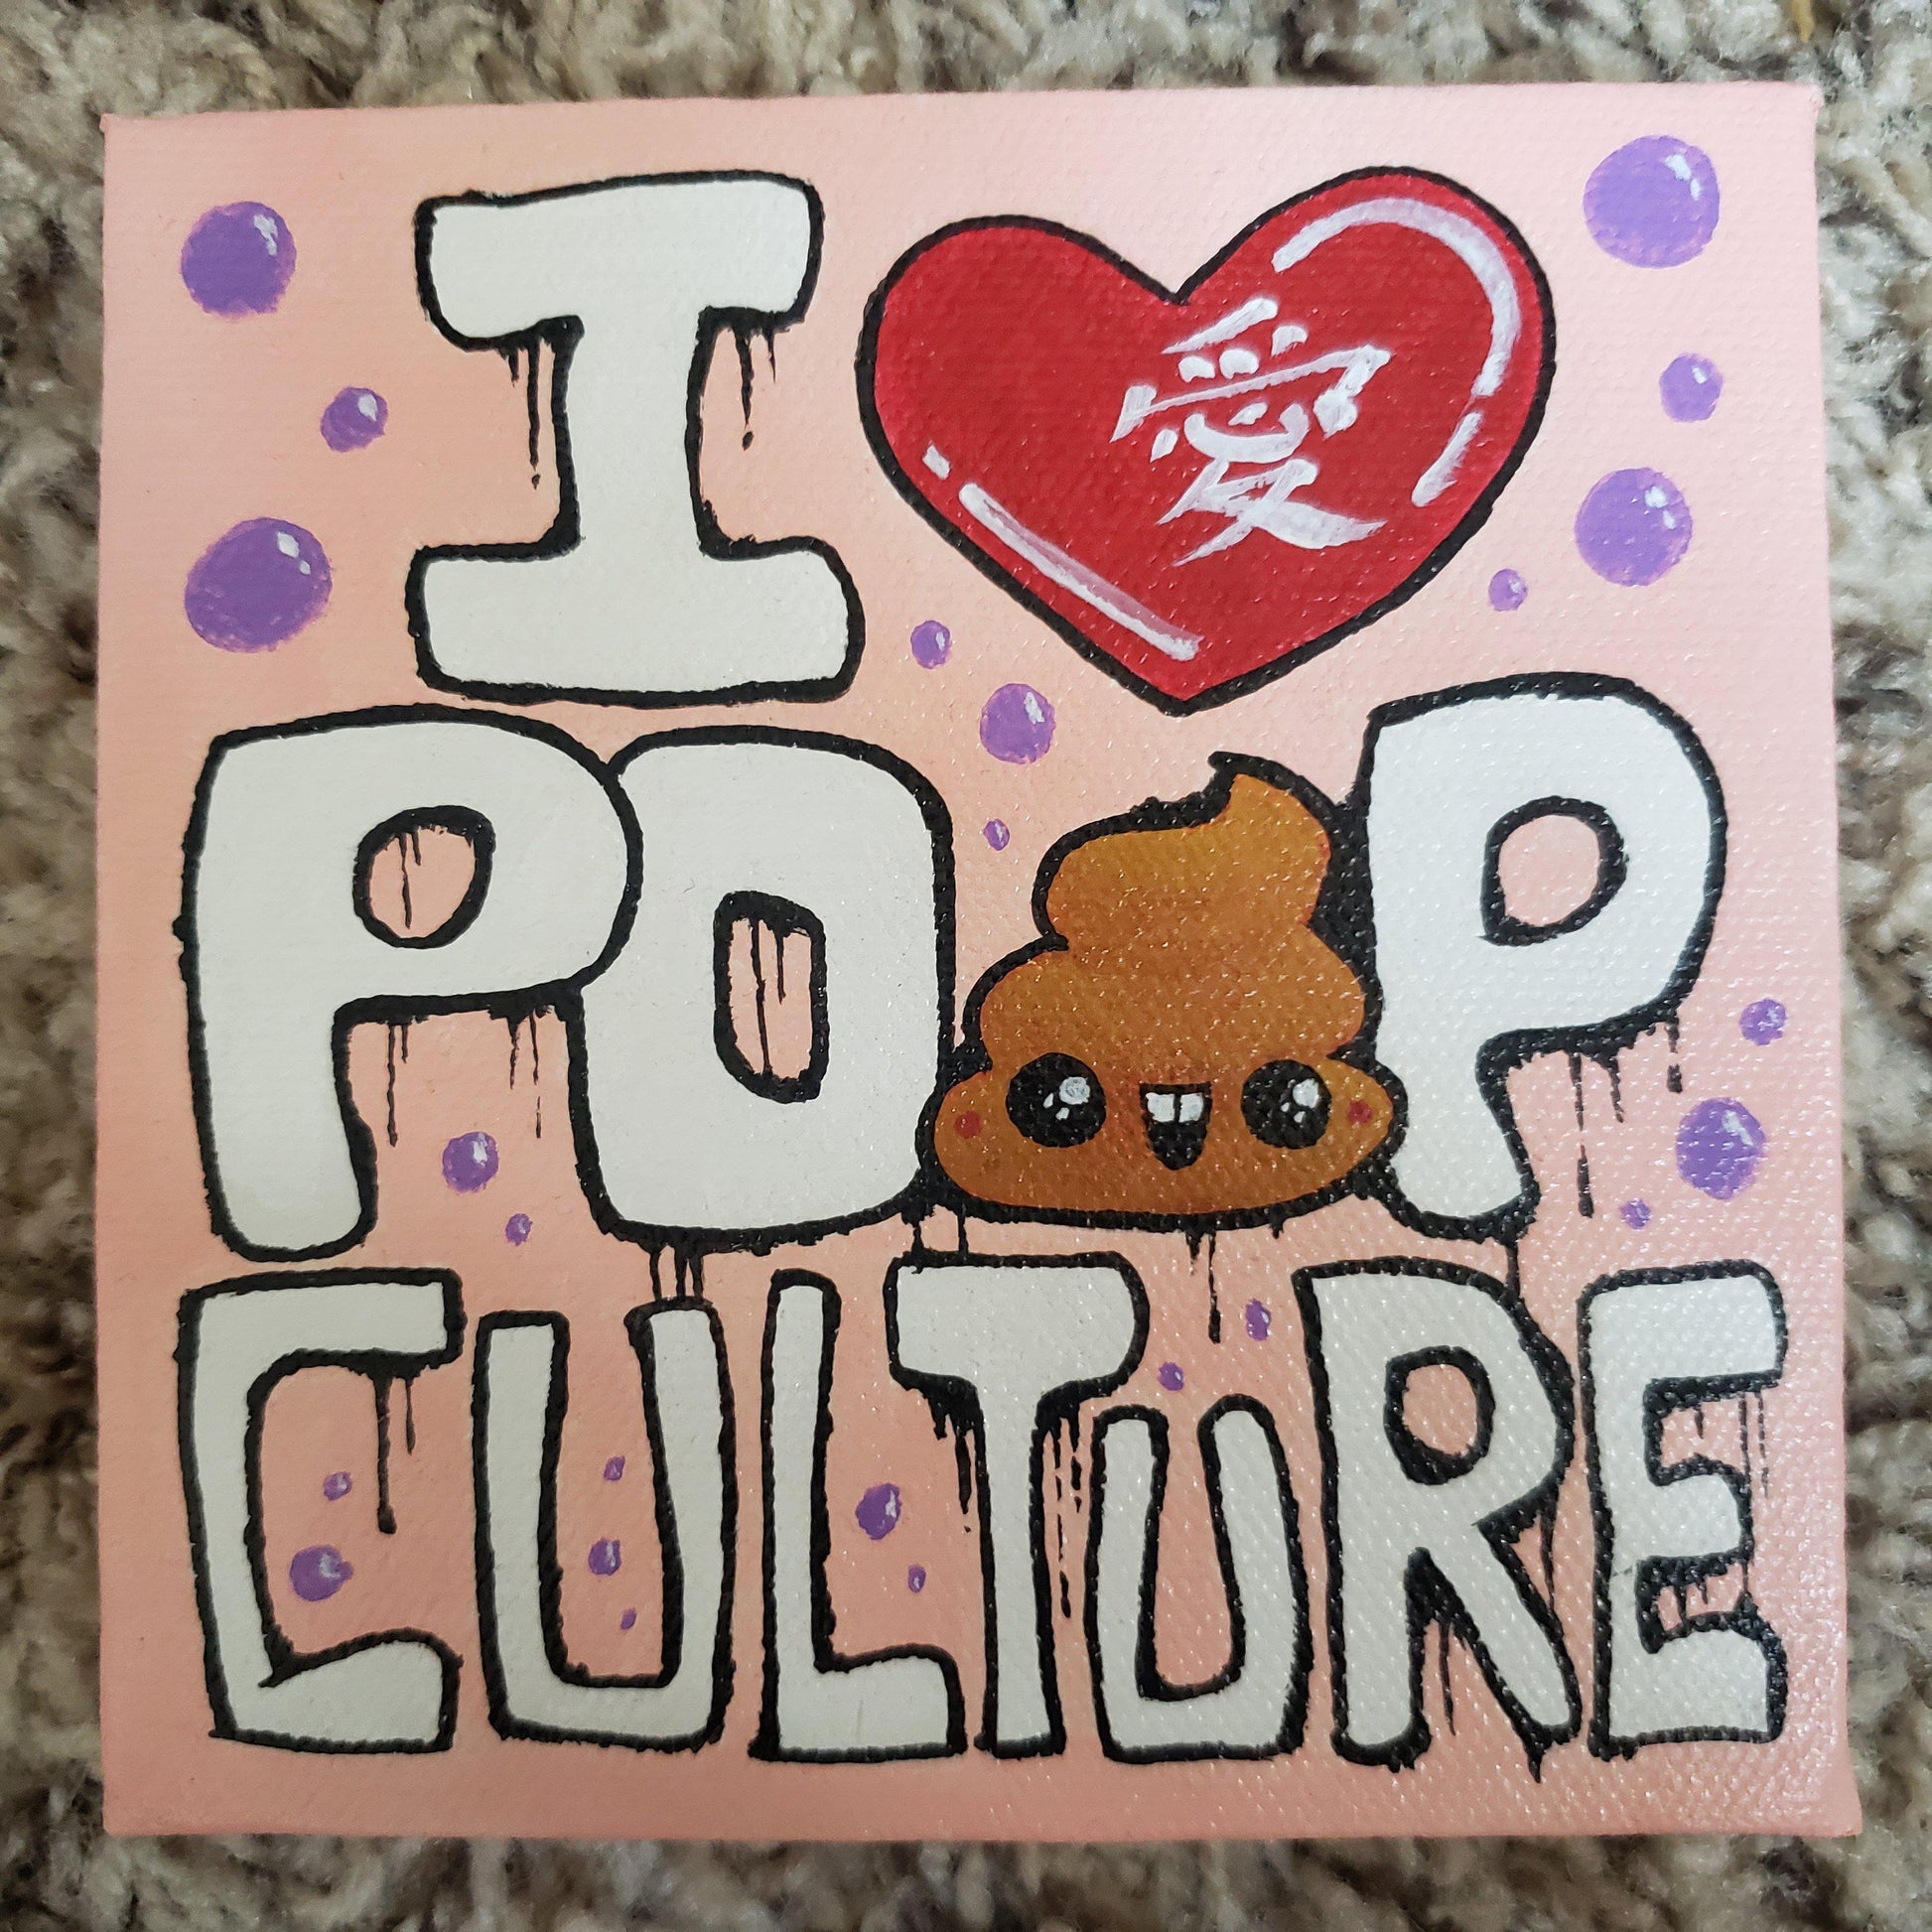 Original I Heart Poop Culture 5x5 Art Canvas - I Heart Poop Culture - Furry Feline Creatives 